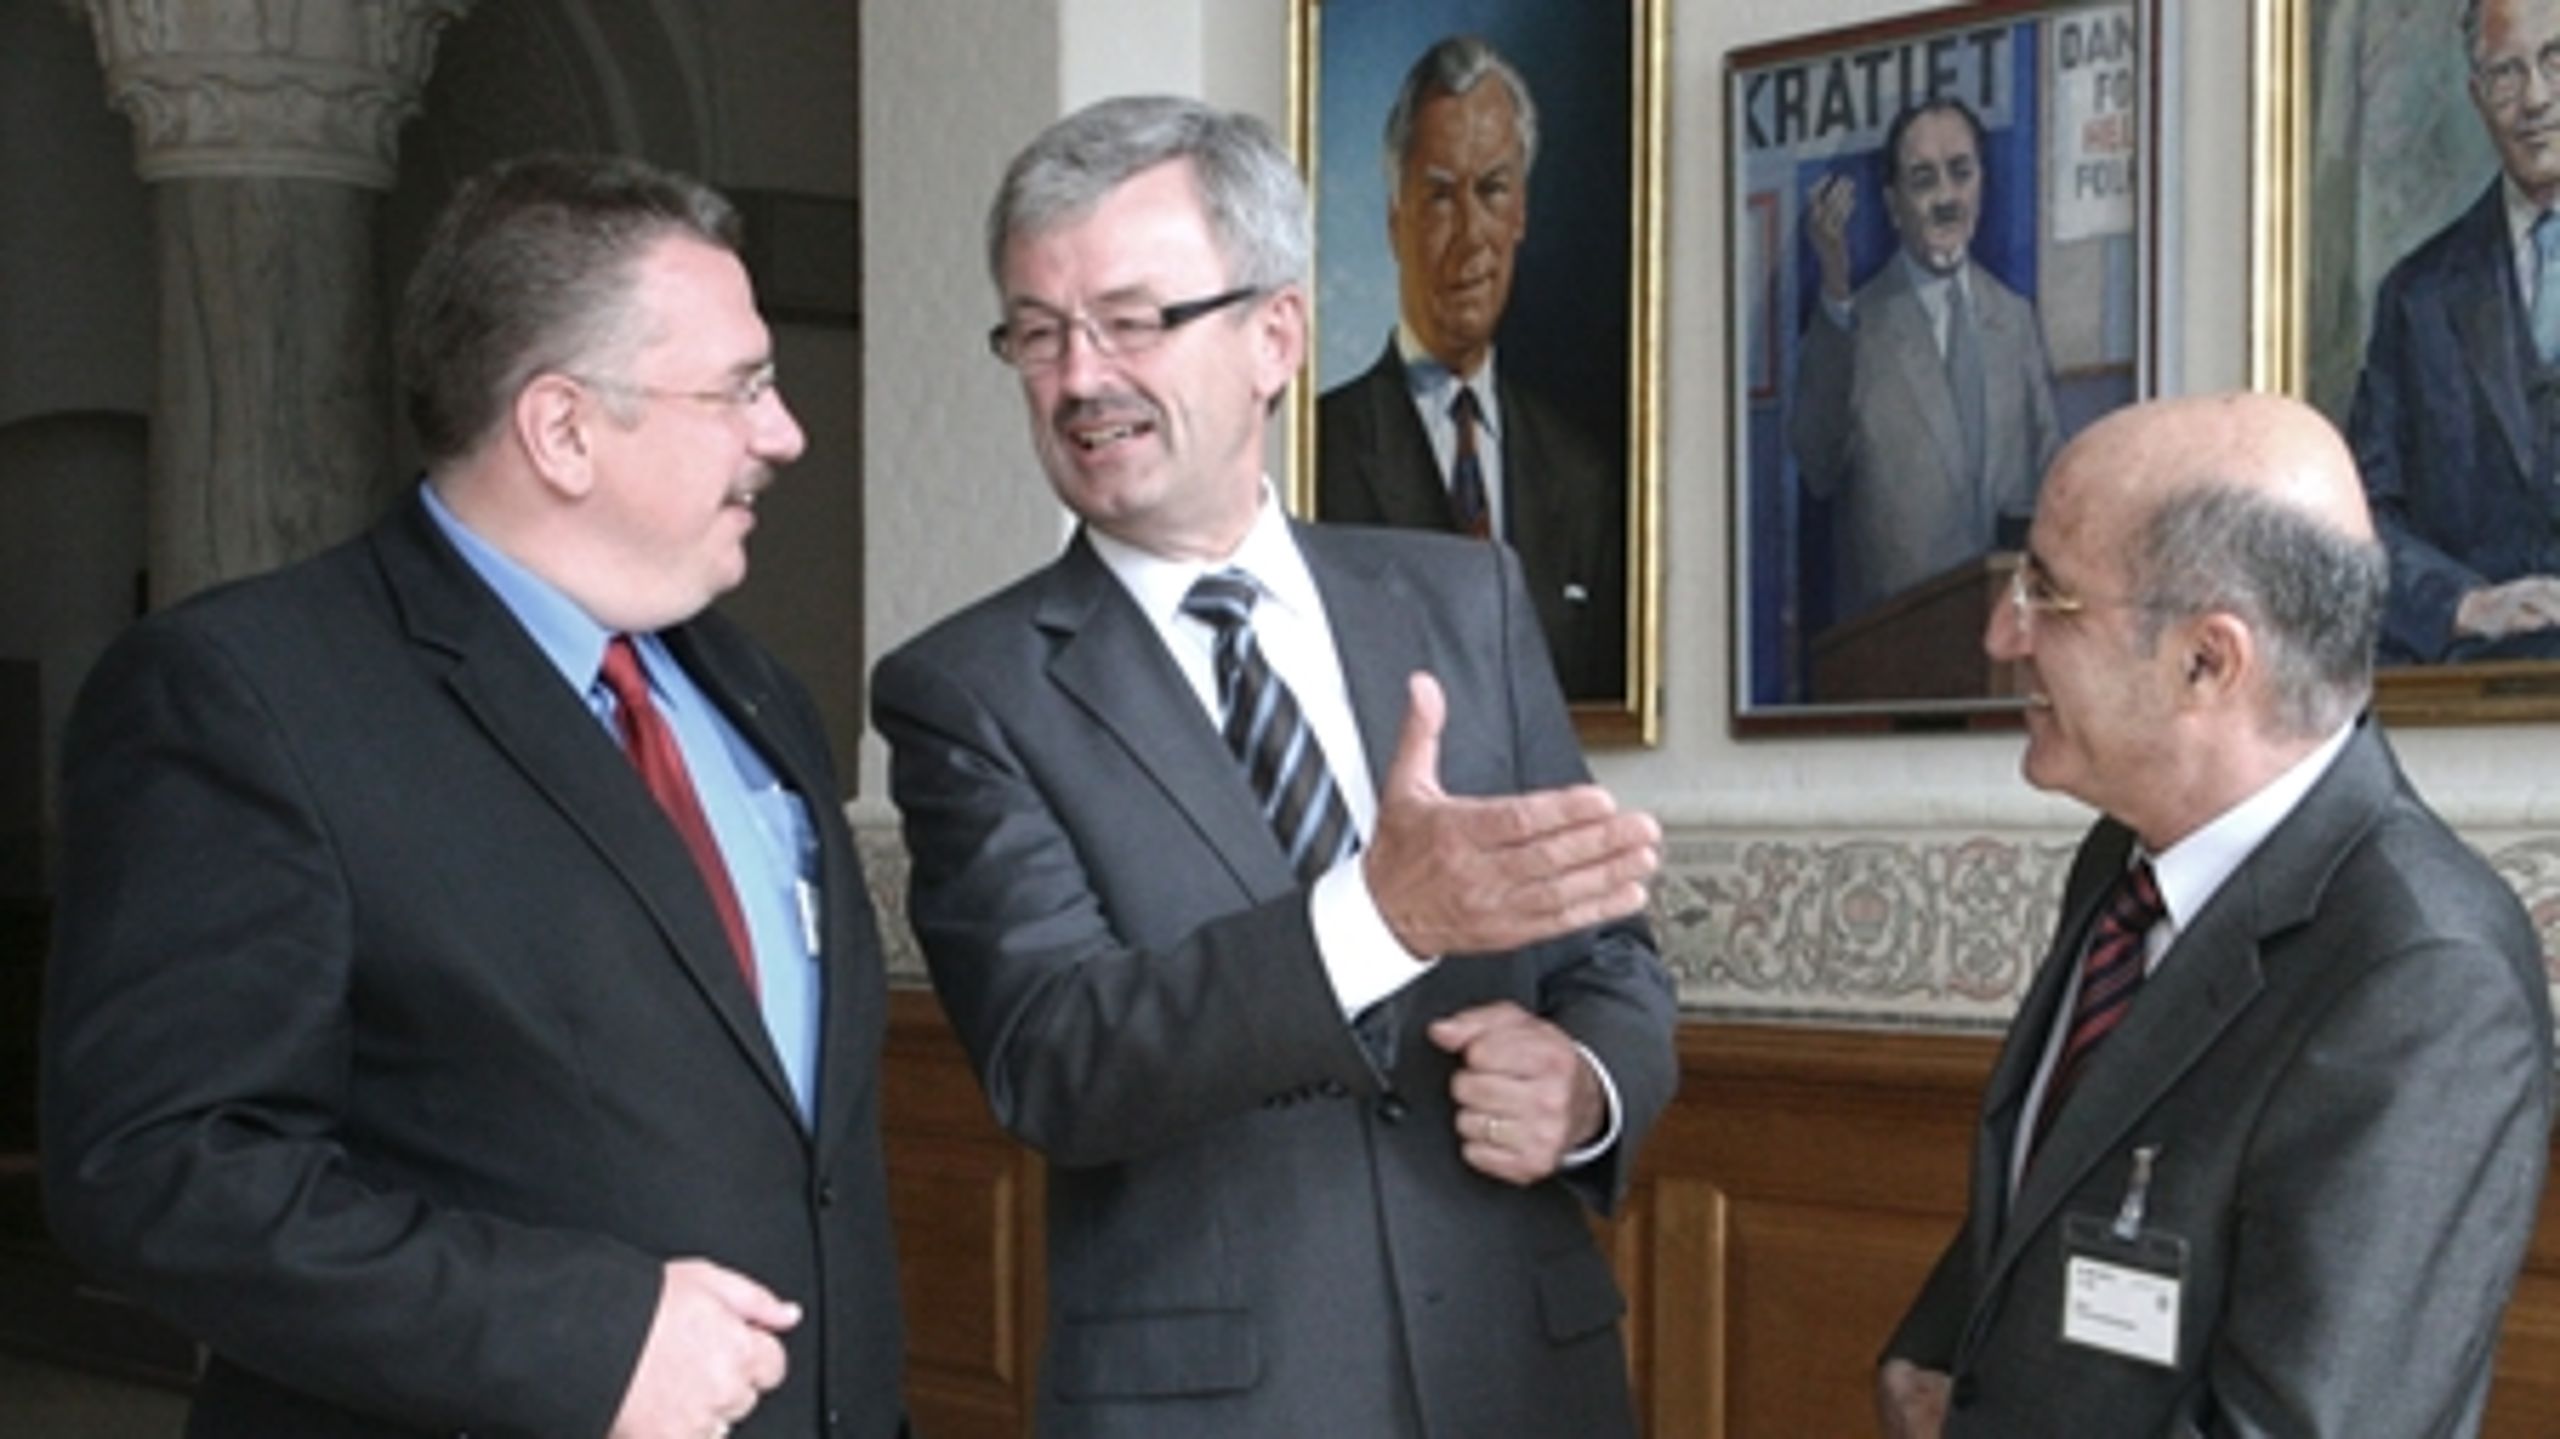 Den polske viceminister Jaroslaw Wojtowicz, fødevareminister Henrik Høegh og Cyperns landbrugsminister Demetris Eliades.